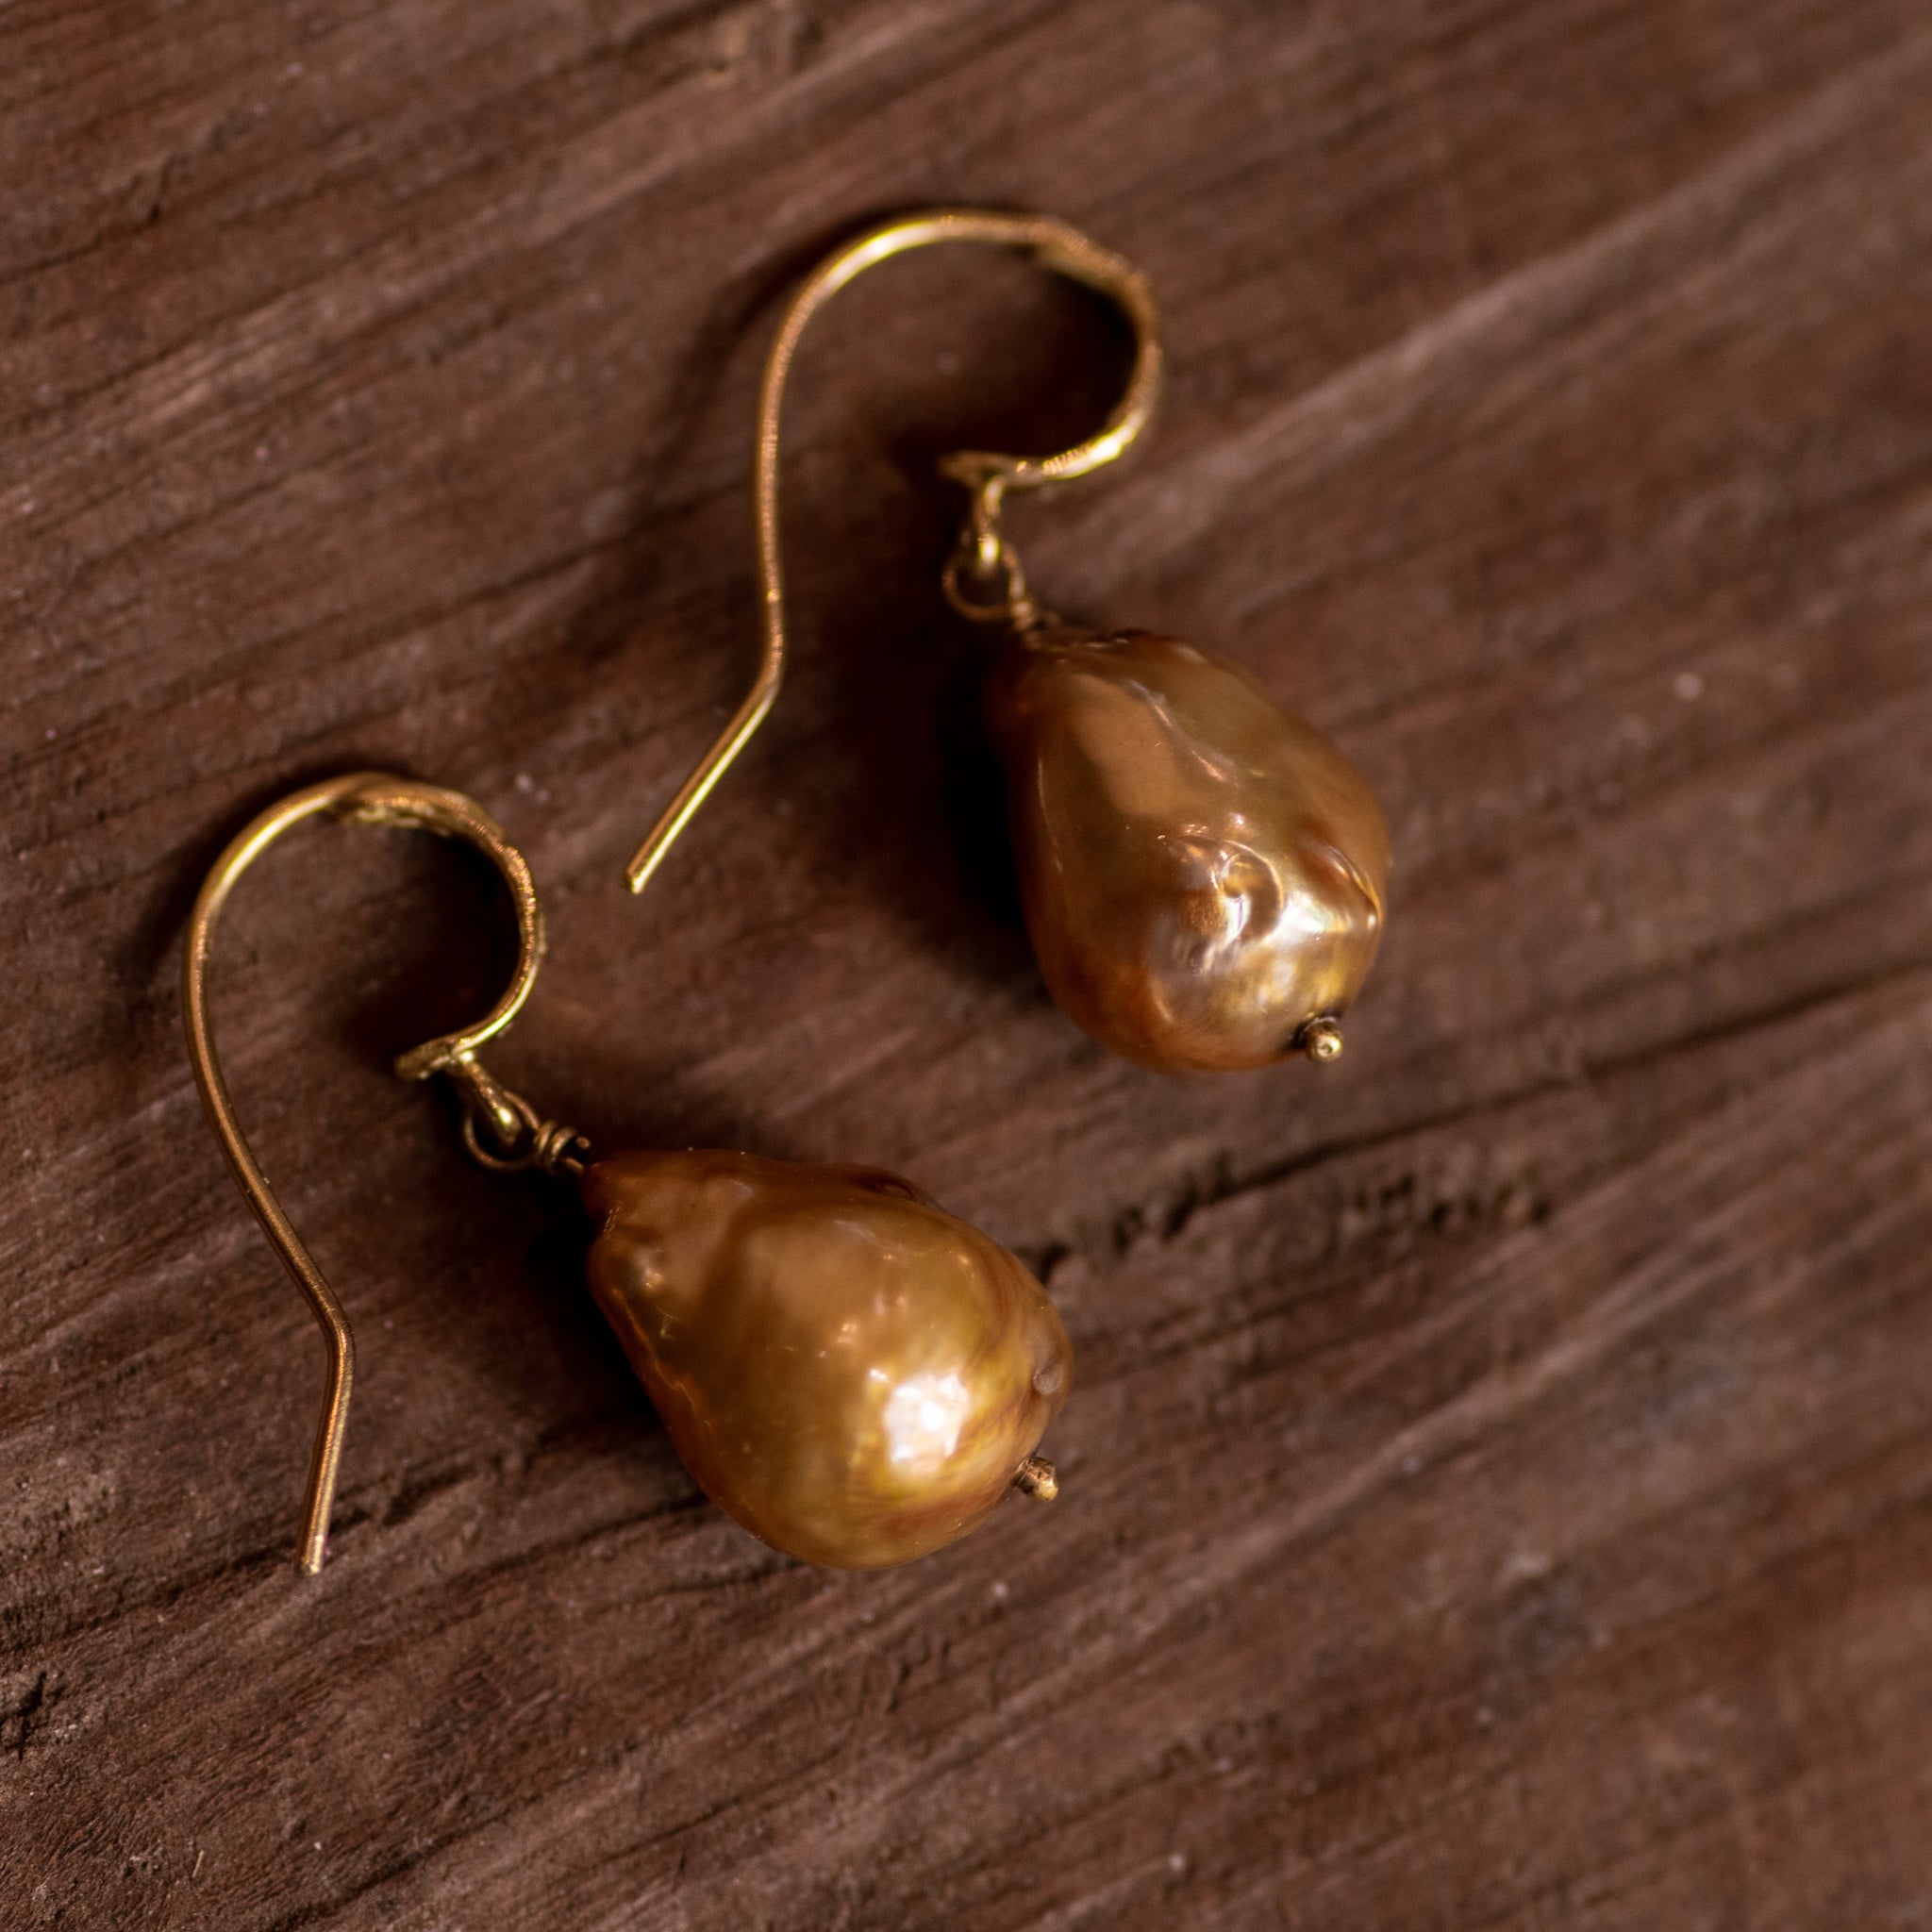 18k Gold Baroque Pearl Earrings